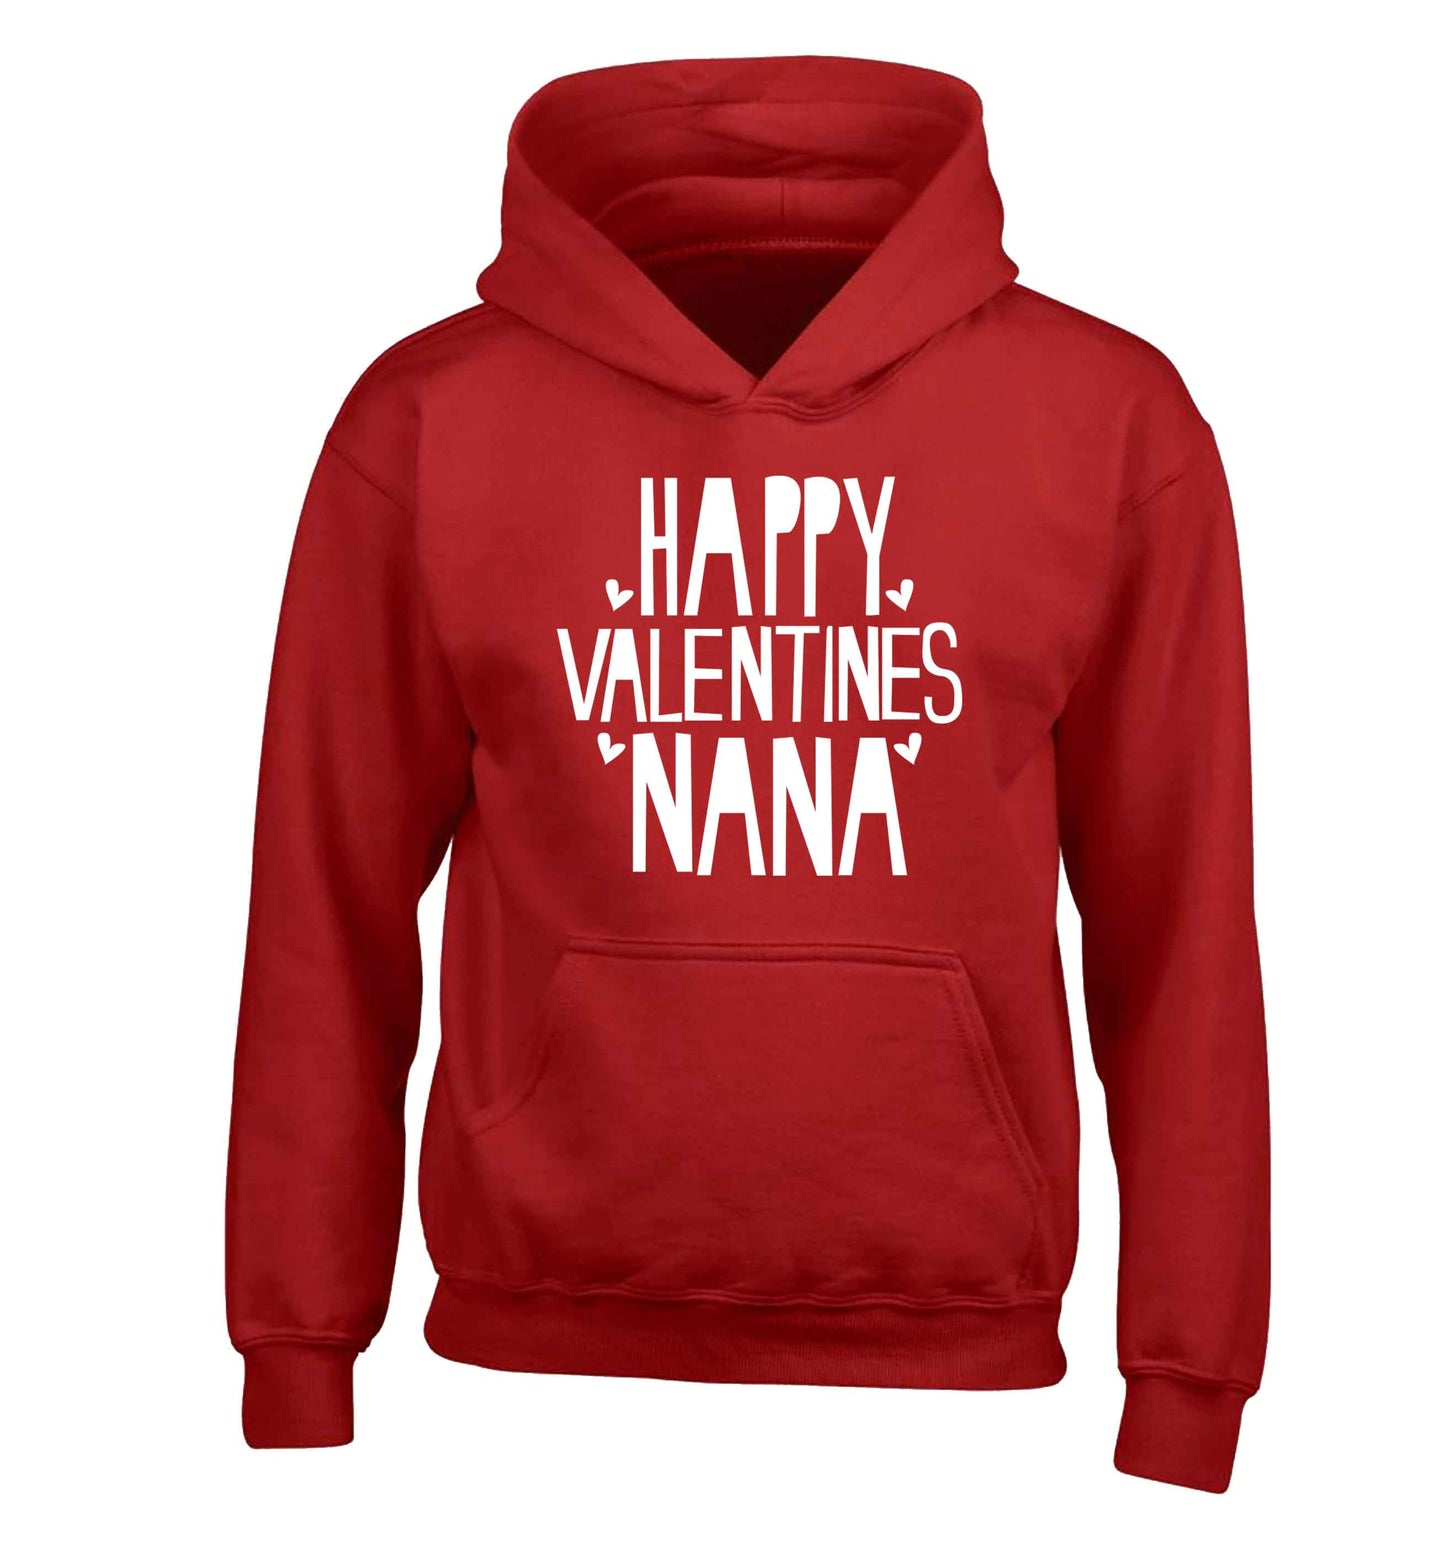 Happy valentines nana children's red hoodie 12-13 Years